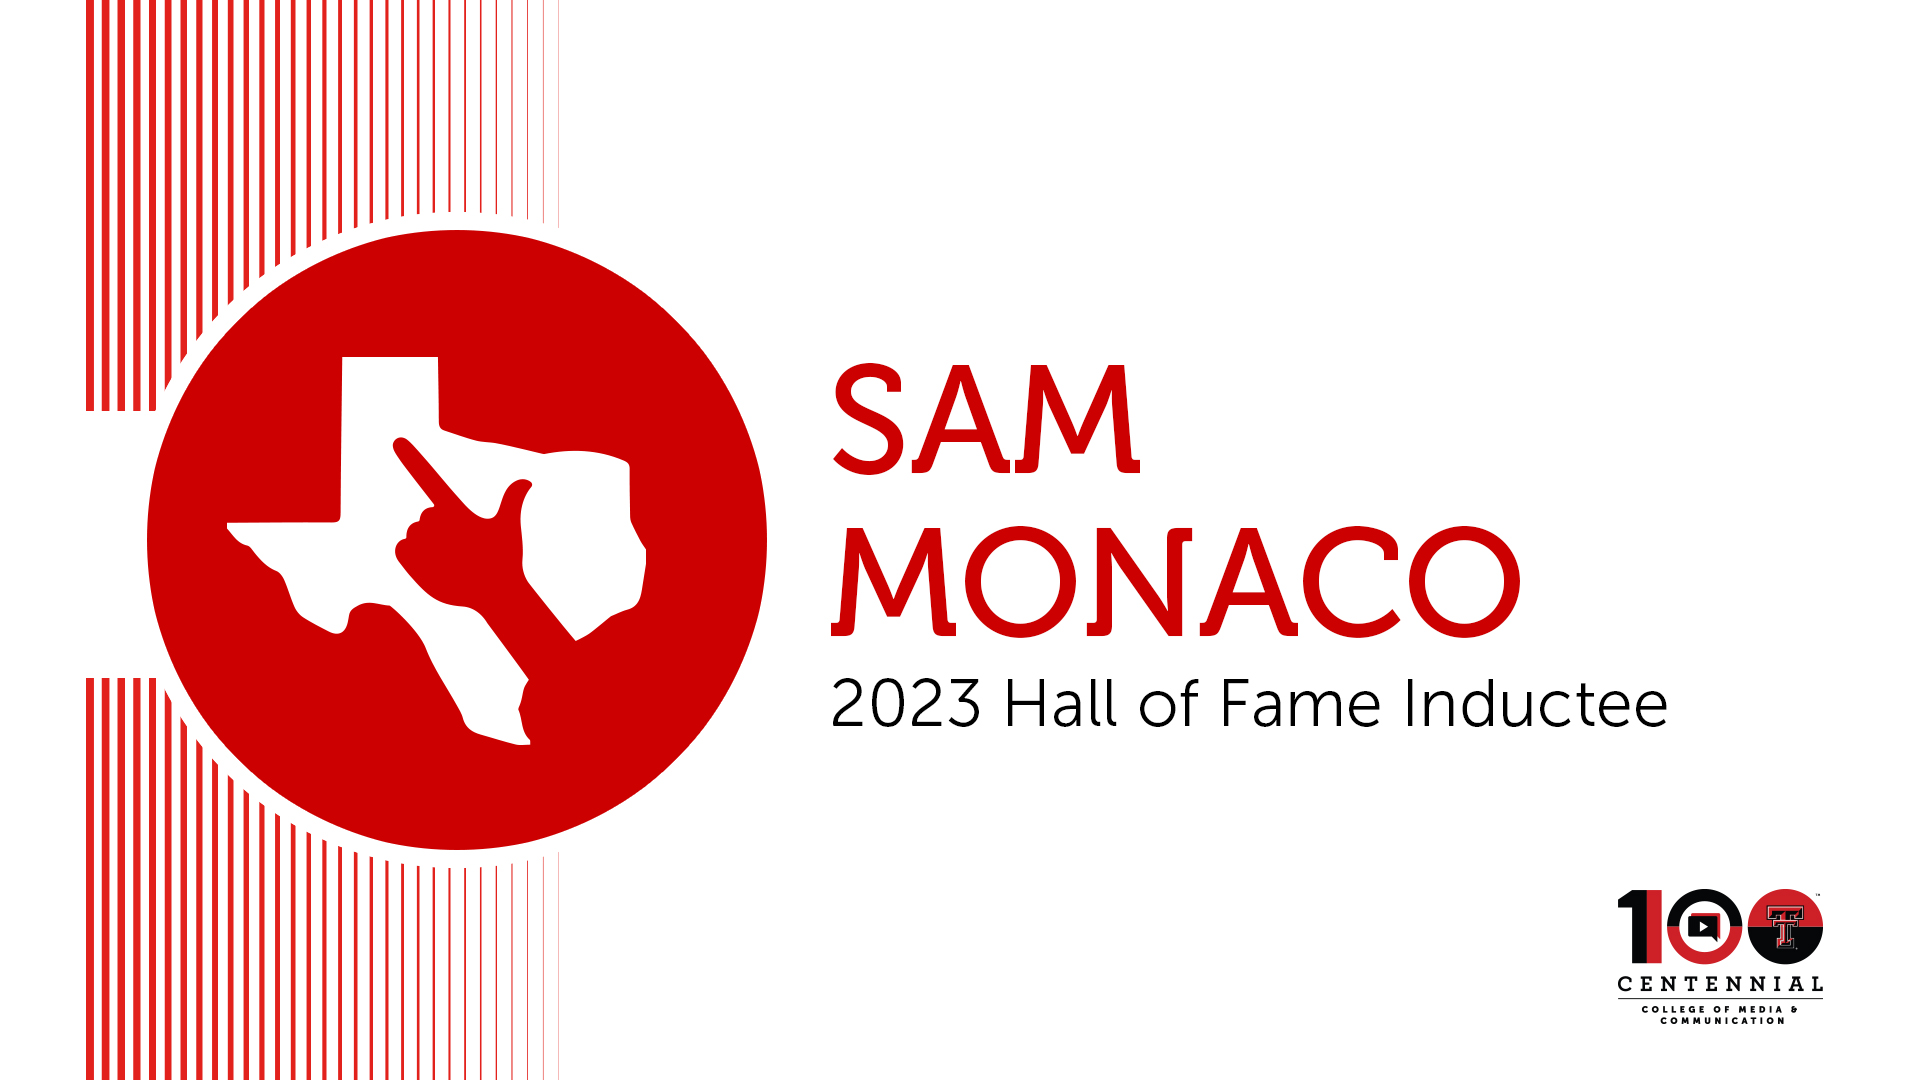 Sam Monaco